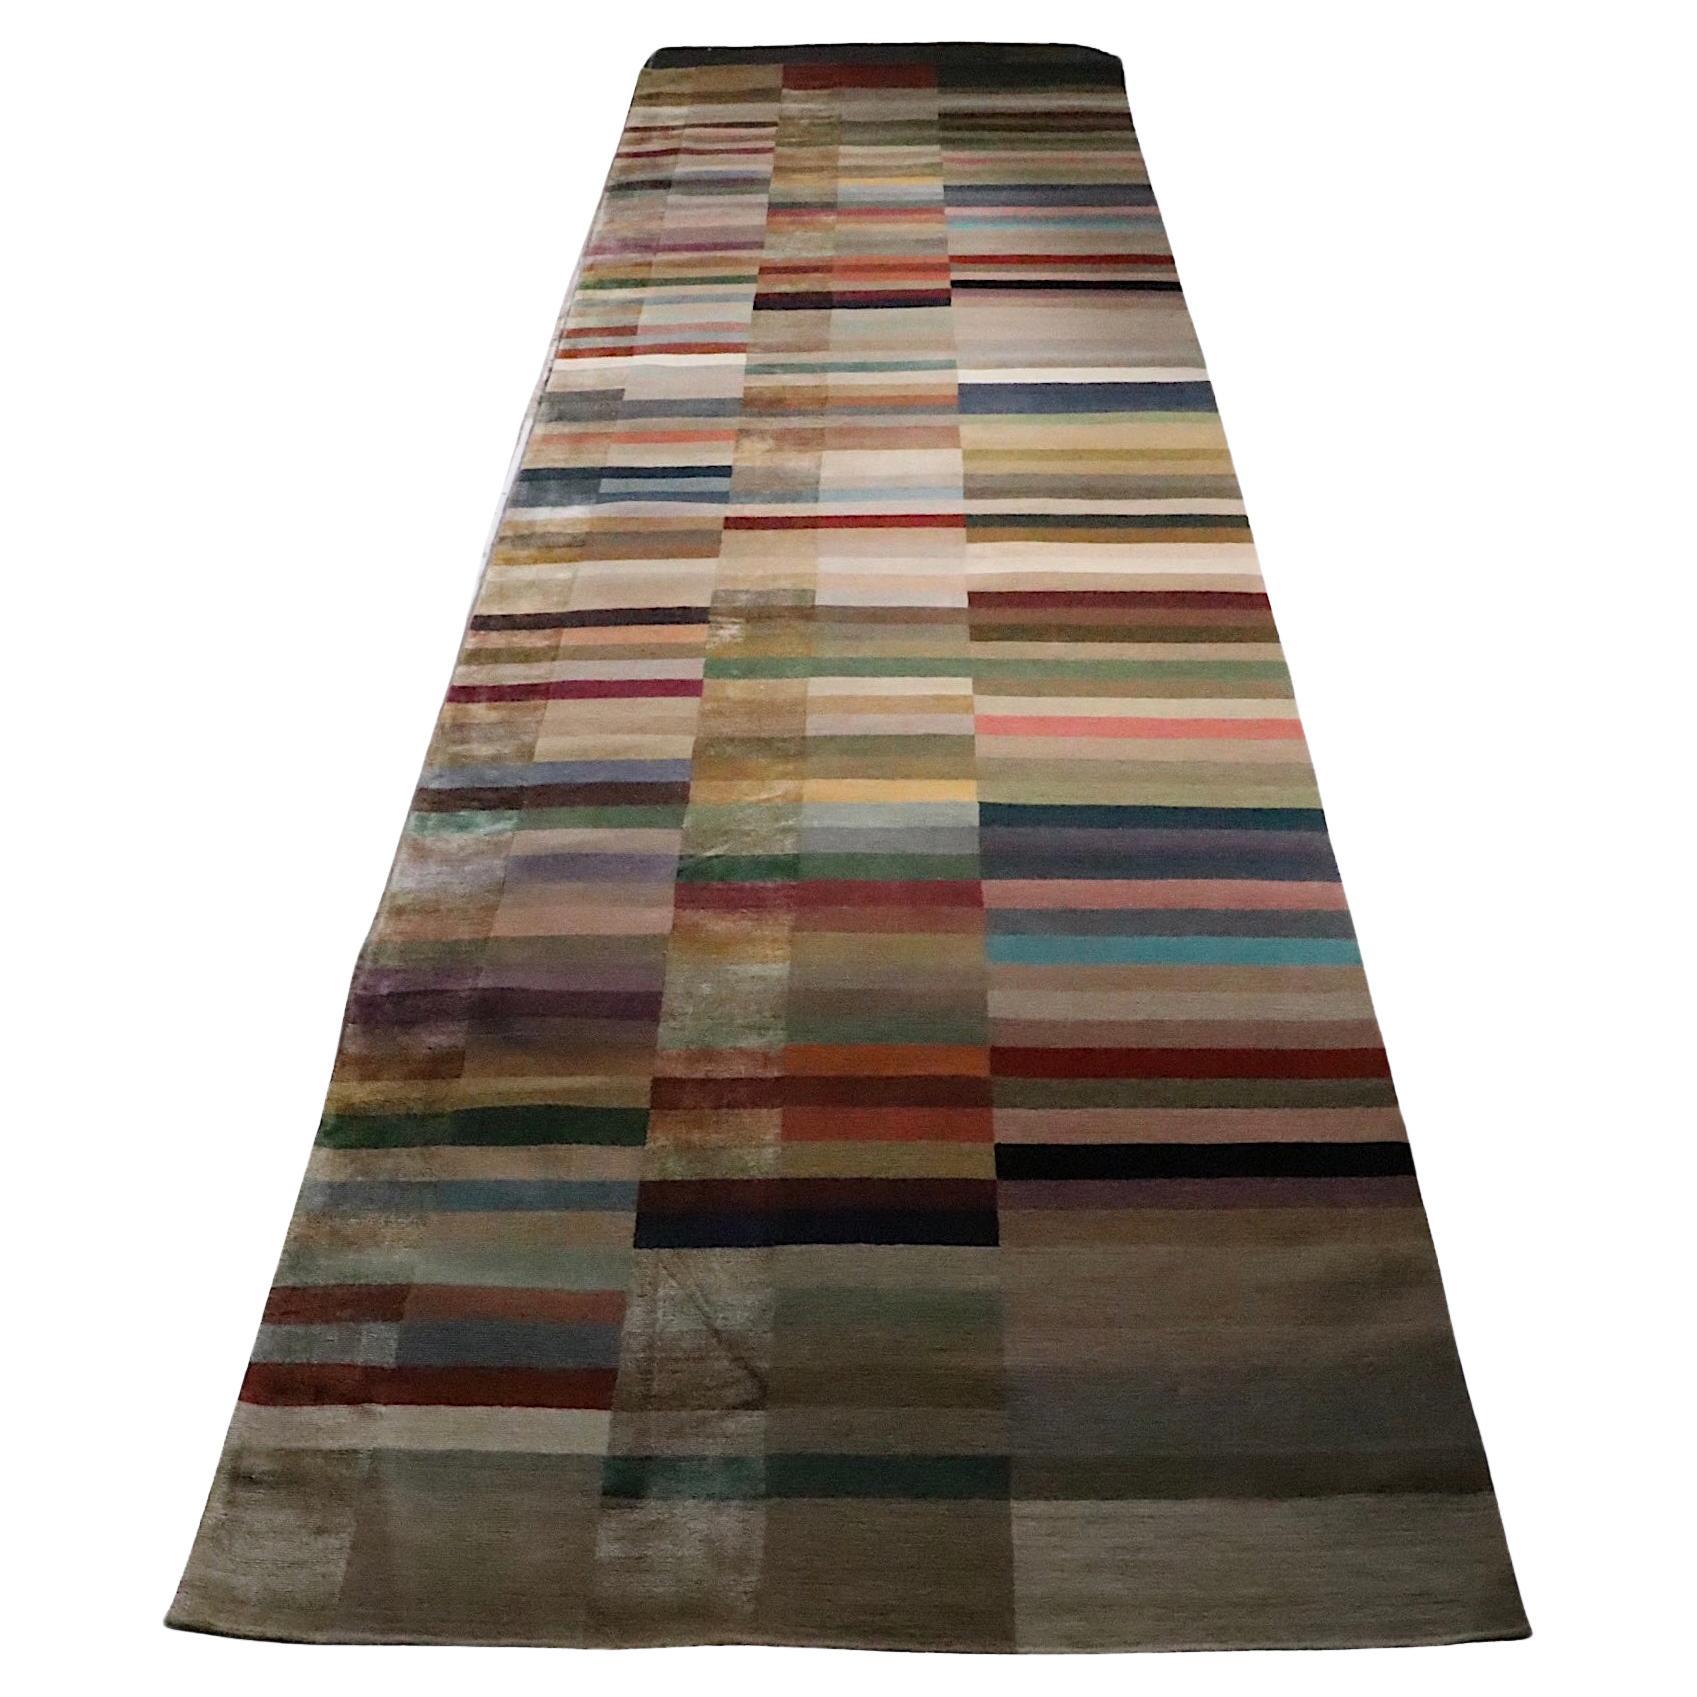 Incroyable chemin de table à motif Spectrum fabriqué au Népal pour The Rug Company. Le tapis comporte trois rangées de  Les blocs de couleurs unies, dont les tons chauds et riches exsudent une sophistication voguiste. L'artisanat et la qualité de